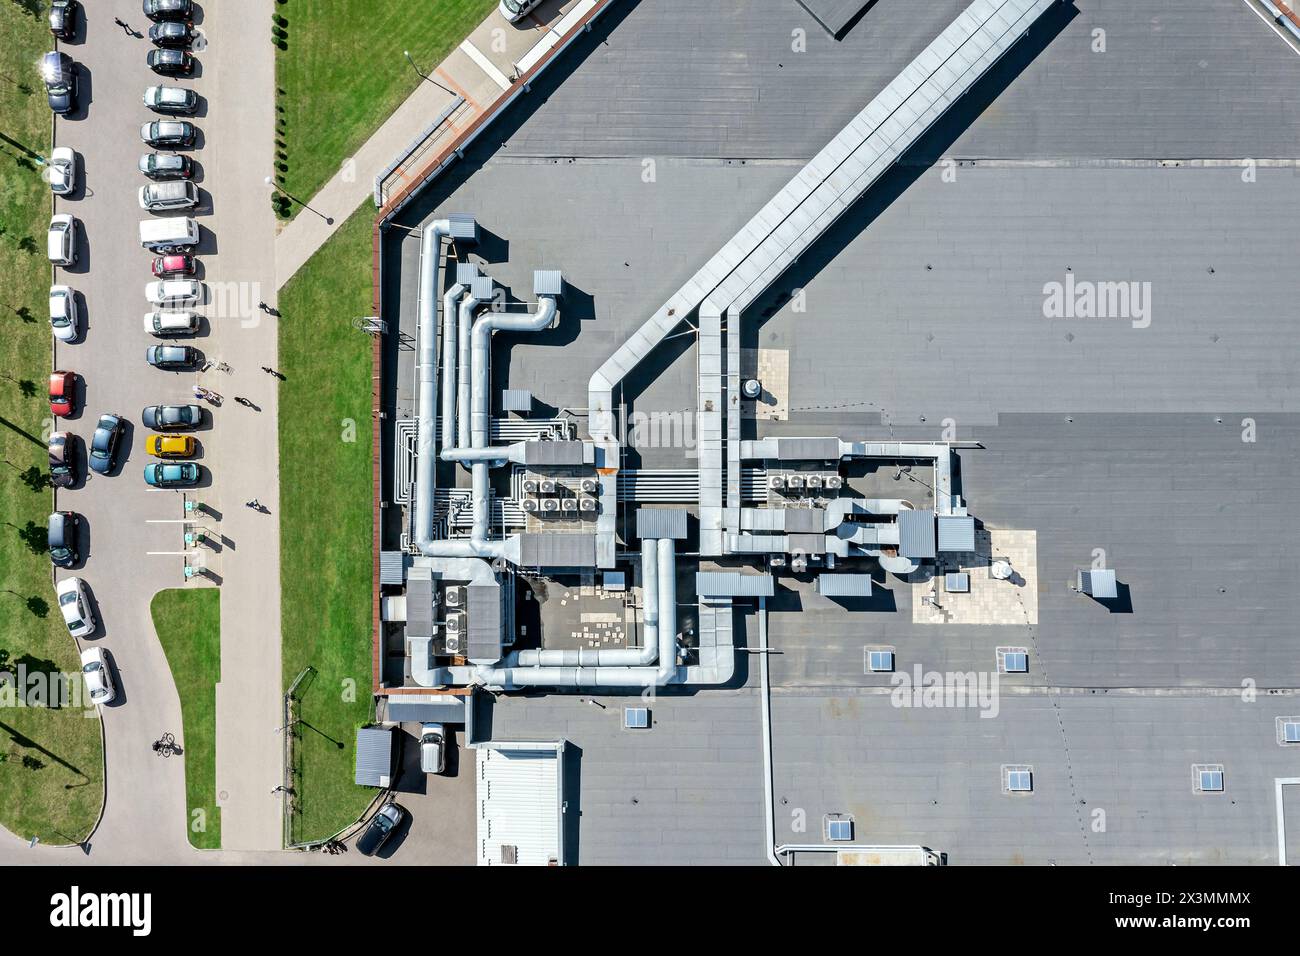 Schindeldach des Einkaufszentrums mit Industrieluftsystem für Lüftung und Klimaanlage. Luftbild, Draufsicht. Stockfoto